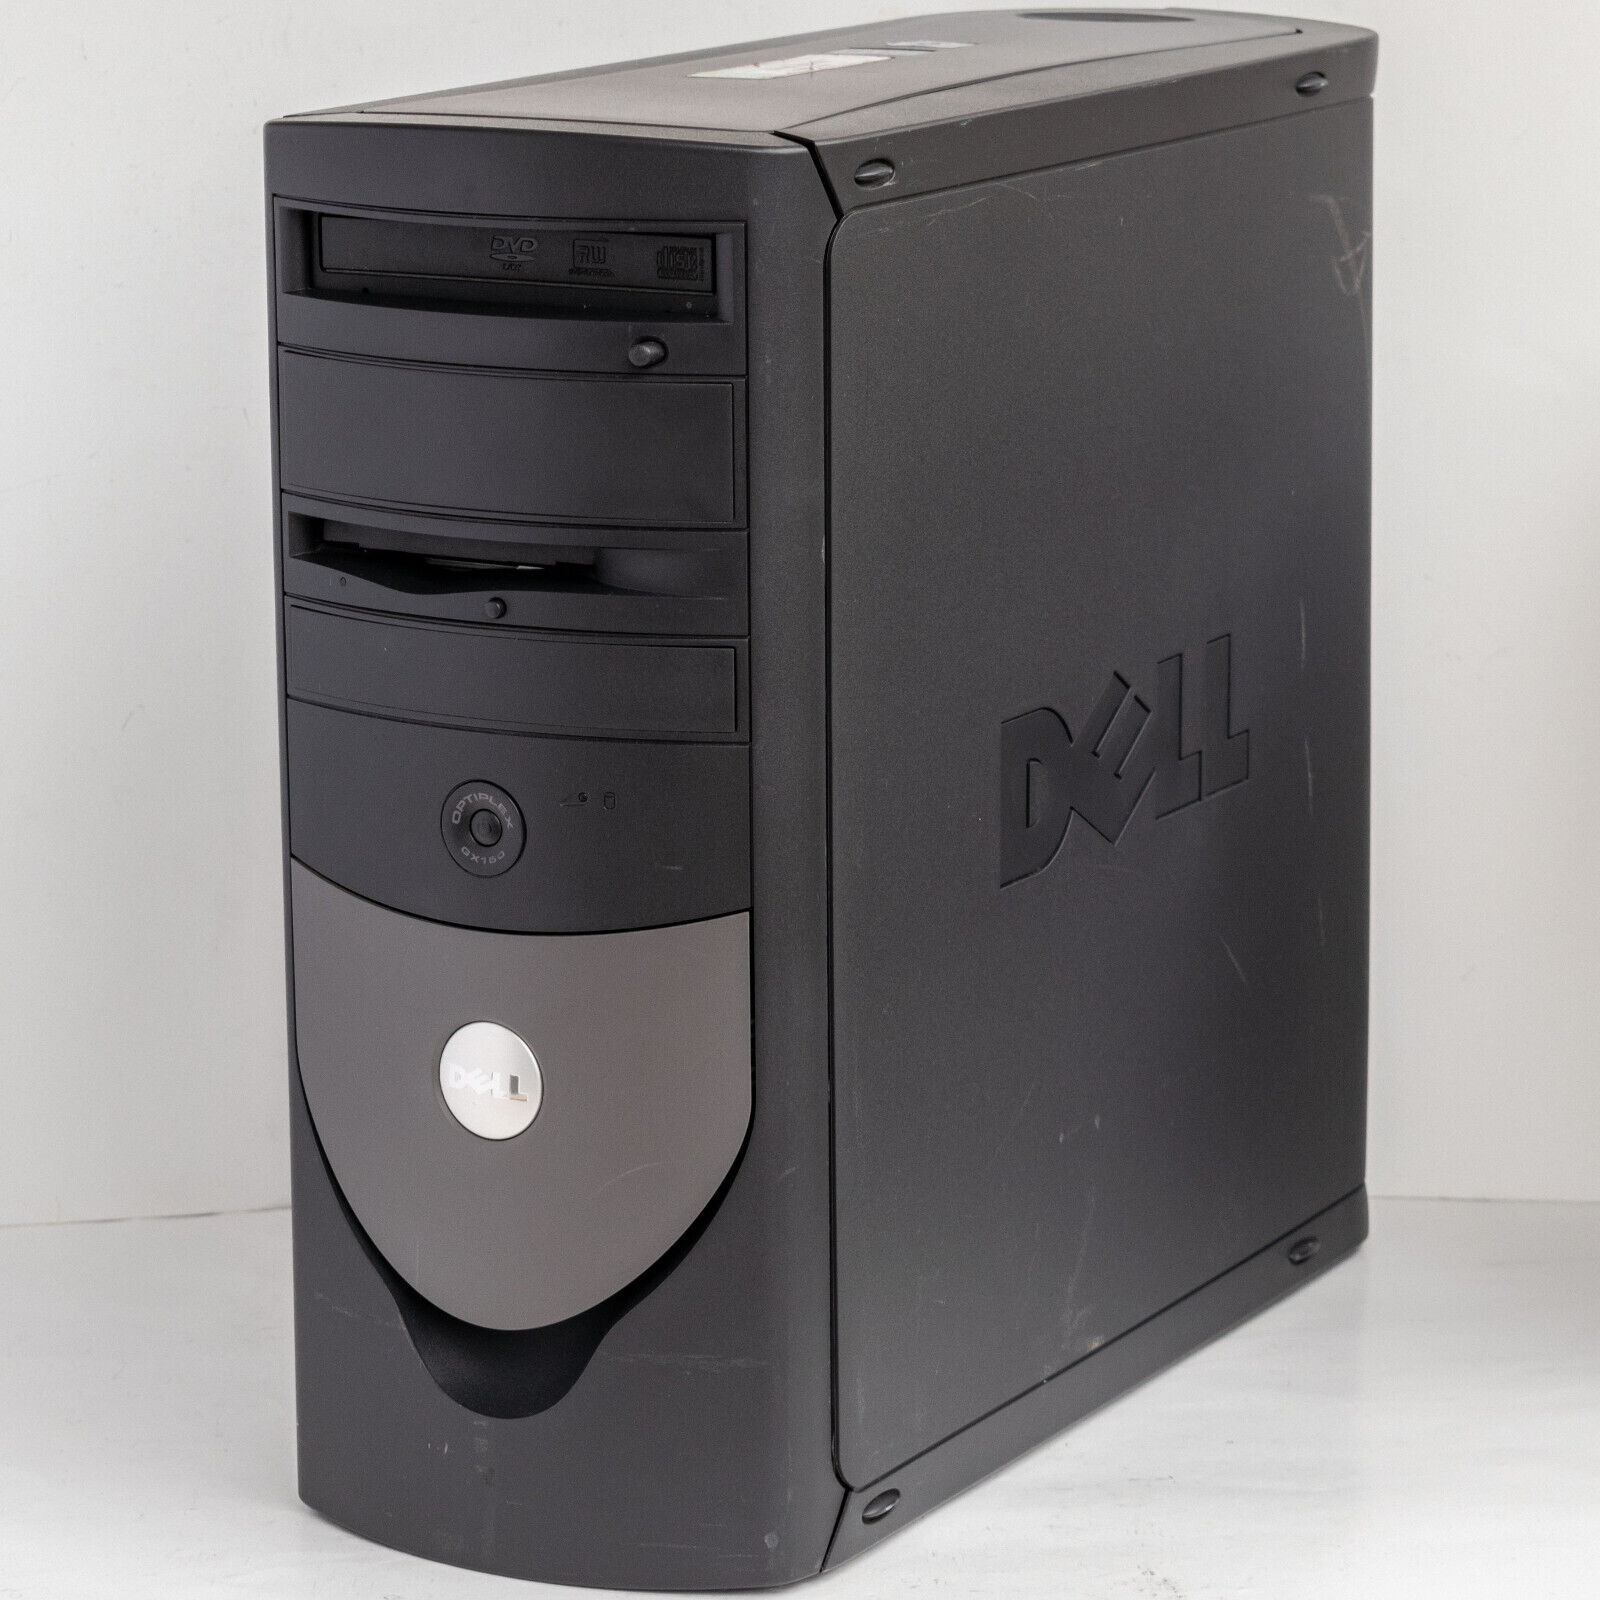 Pentium III Geforce Sound Blaster Windows 98 SE Gaming PC Dell OptiPlex GX150